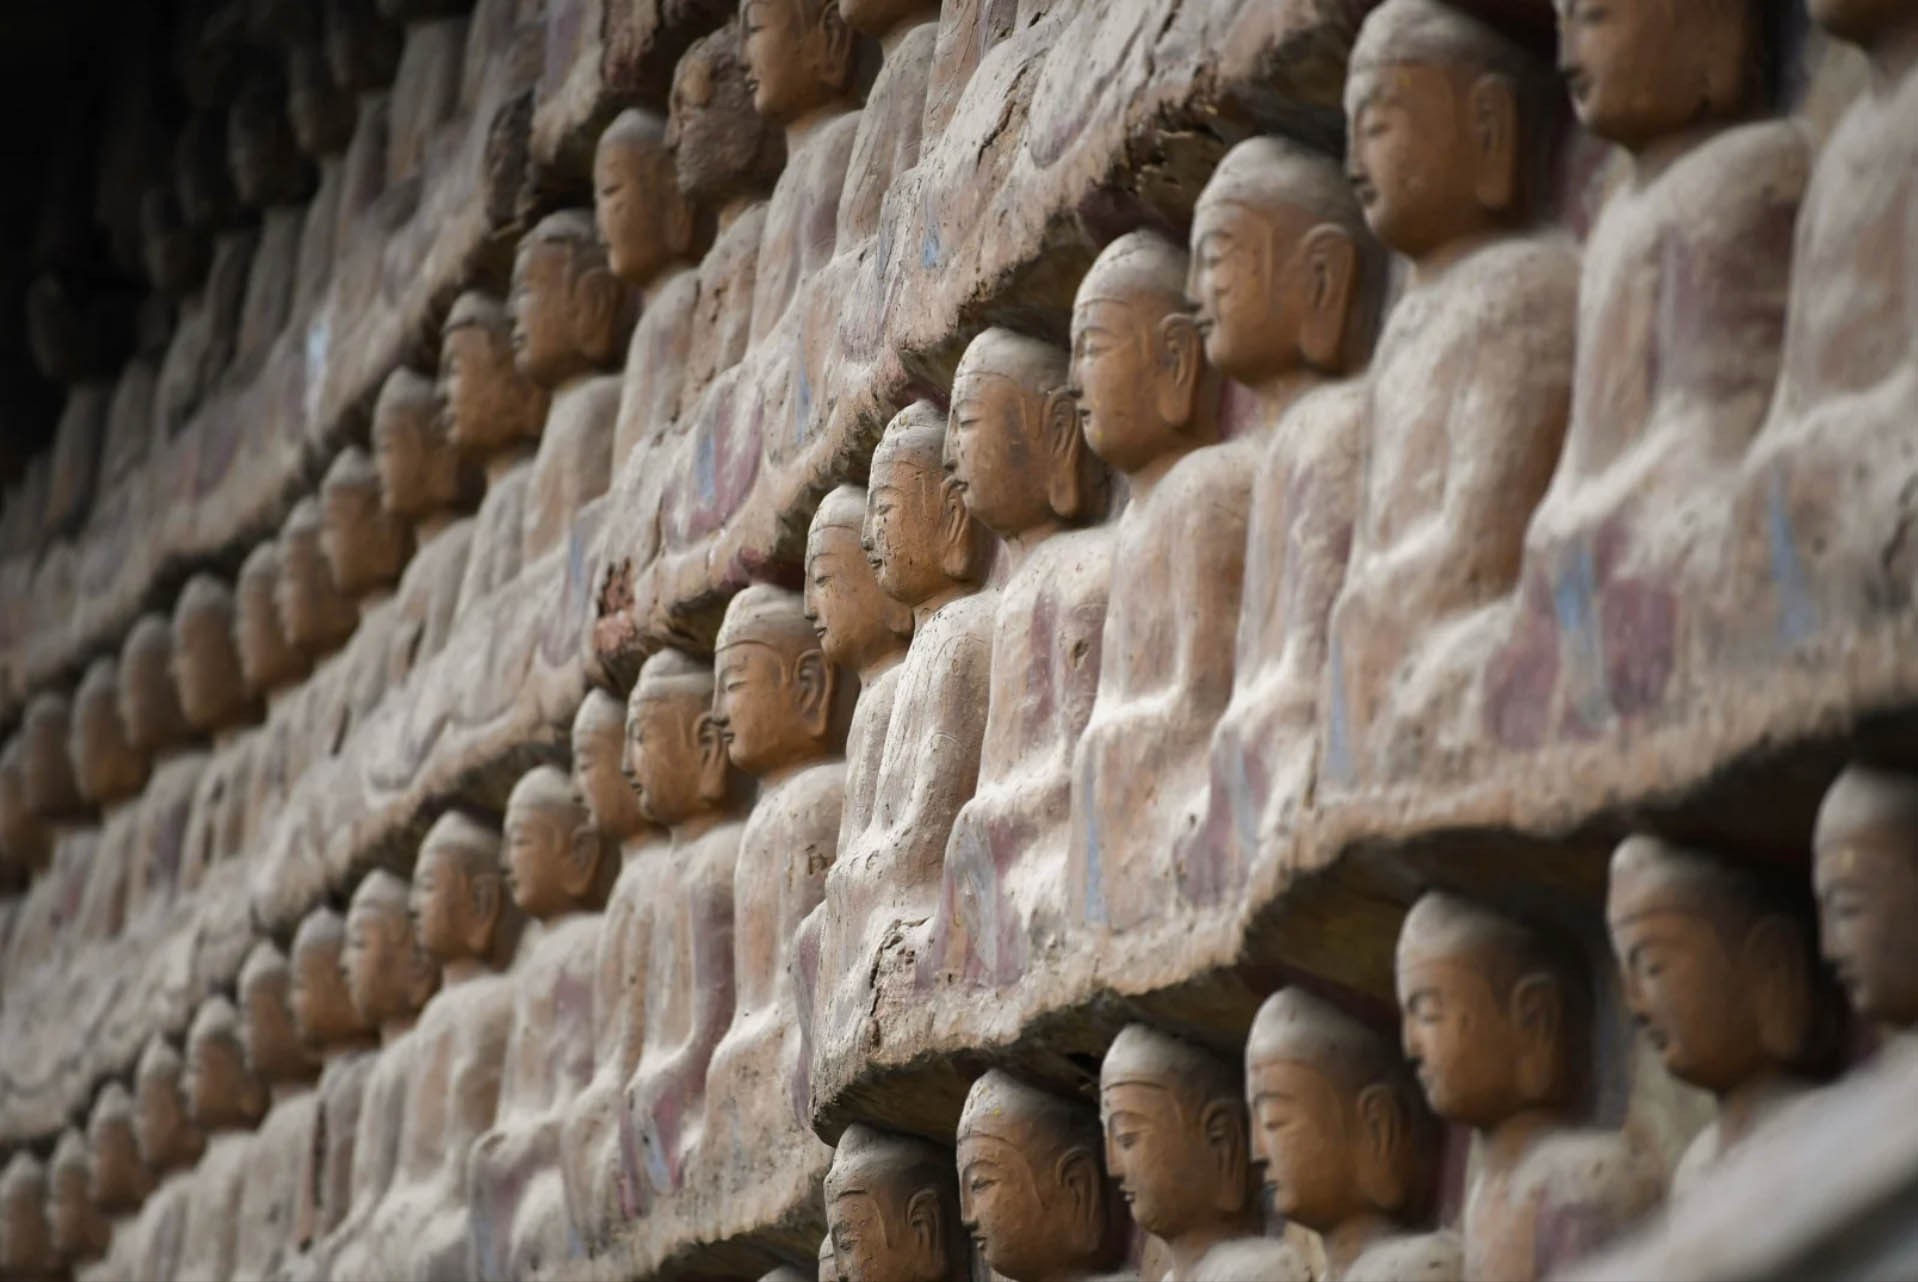 Các tác phẩm điêu khắc bằng đất sét tại Mạch Tích Sơn cao từ 10cm đến 16m phản ánh đặc điểm điêu khắc từng thời kỳ và sự phát triển của nghệ thuật điêu khắc sét Trung Quốc trong hơn một nghìn năm qua.